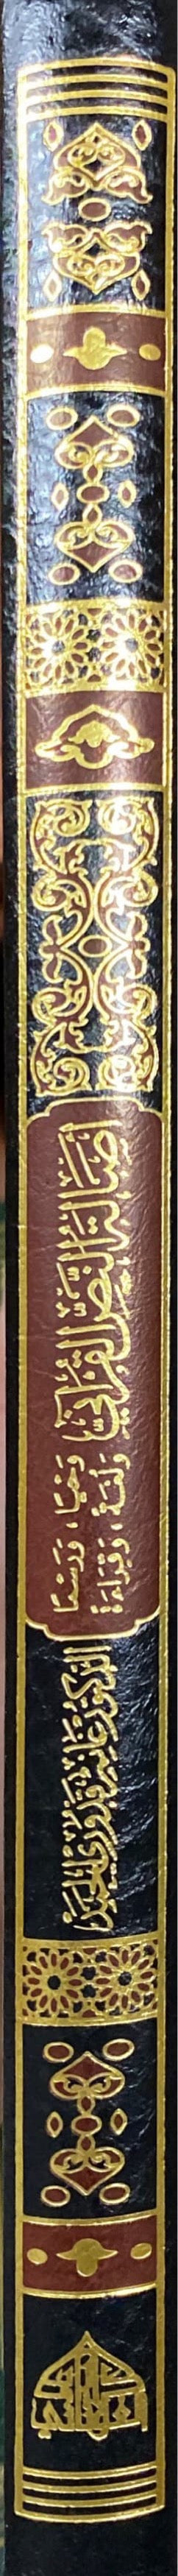 اصالة النص القراني    Asalat An Nas Al Qurani